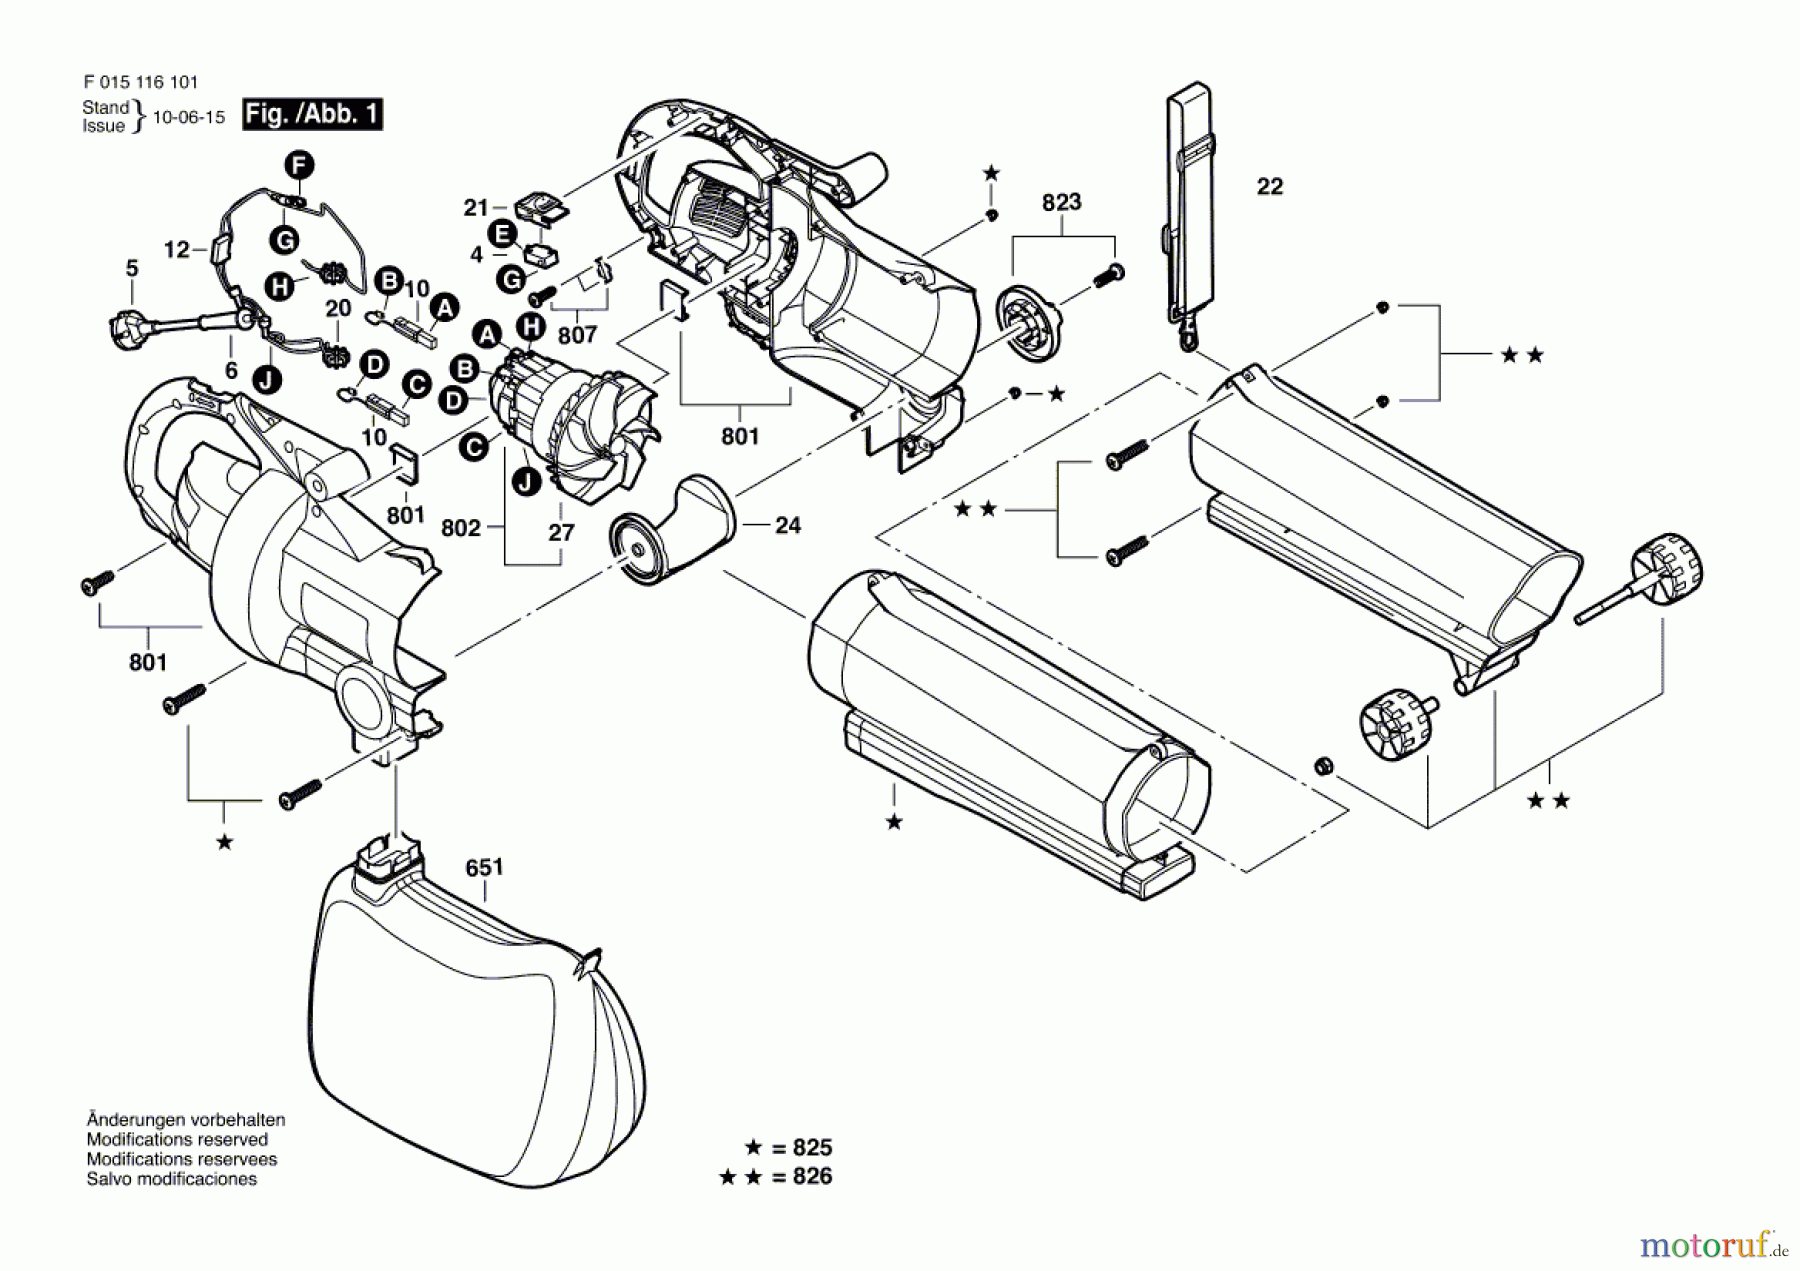  Bosch Werkzeug Druckgebläse 0790 Seite 1